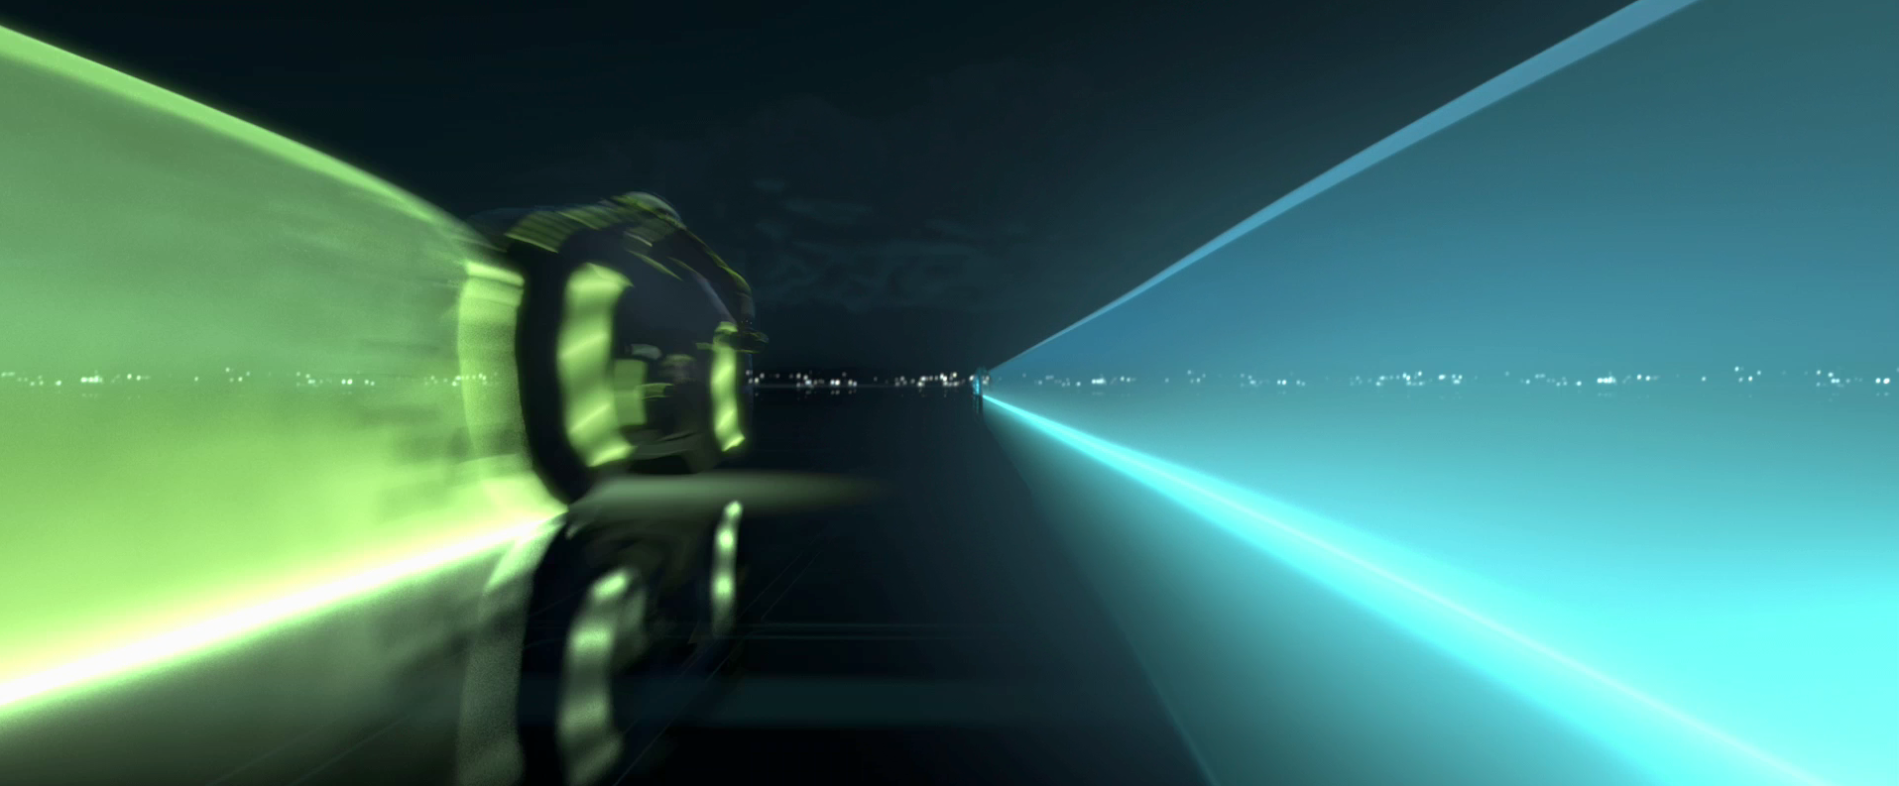 Tron Legacy Light Cycle Race Desktop Wallpaper